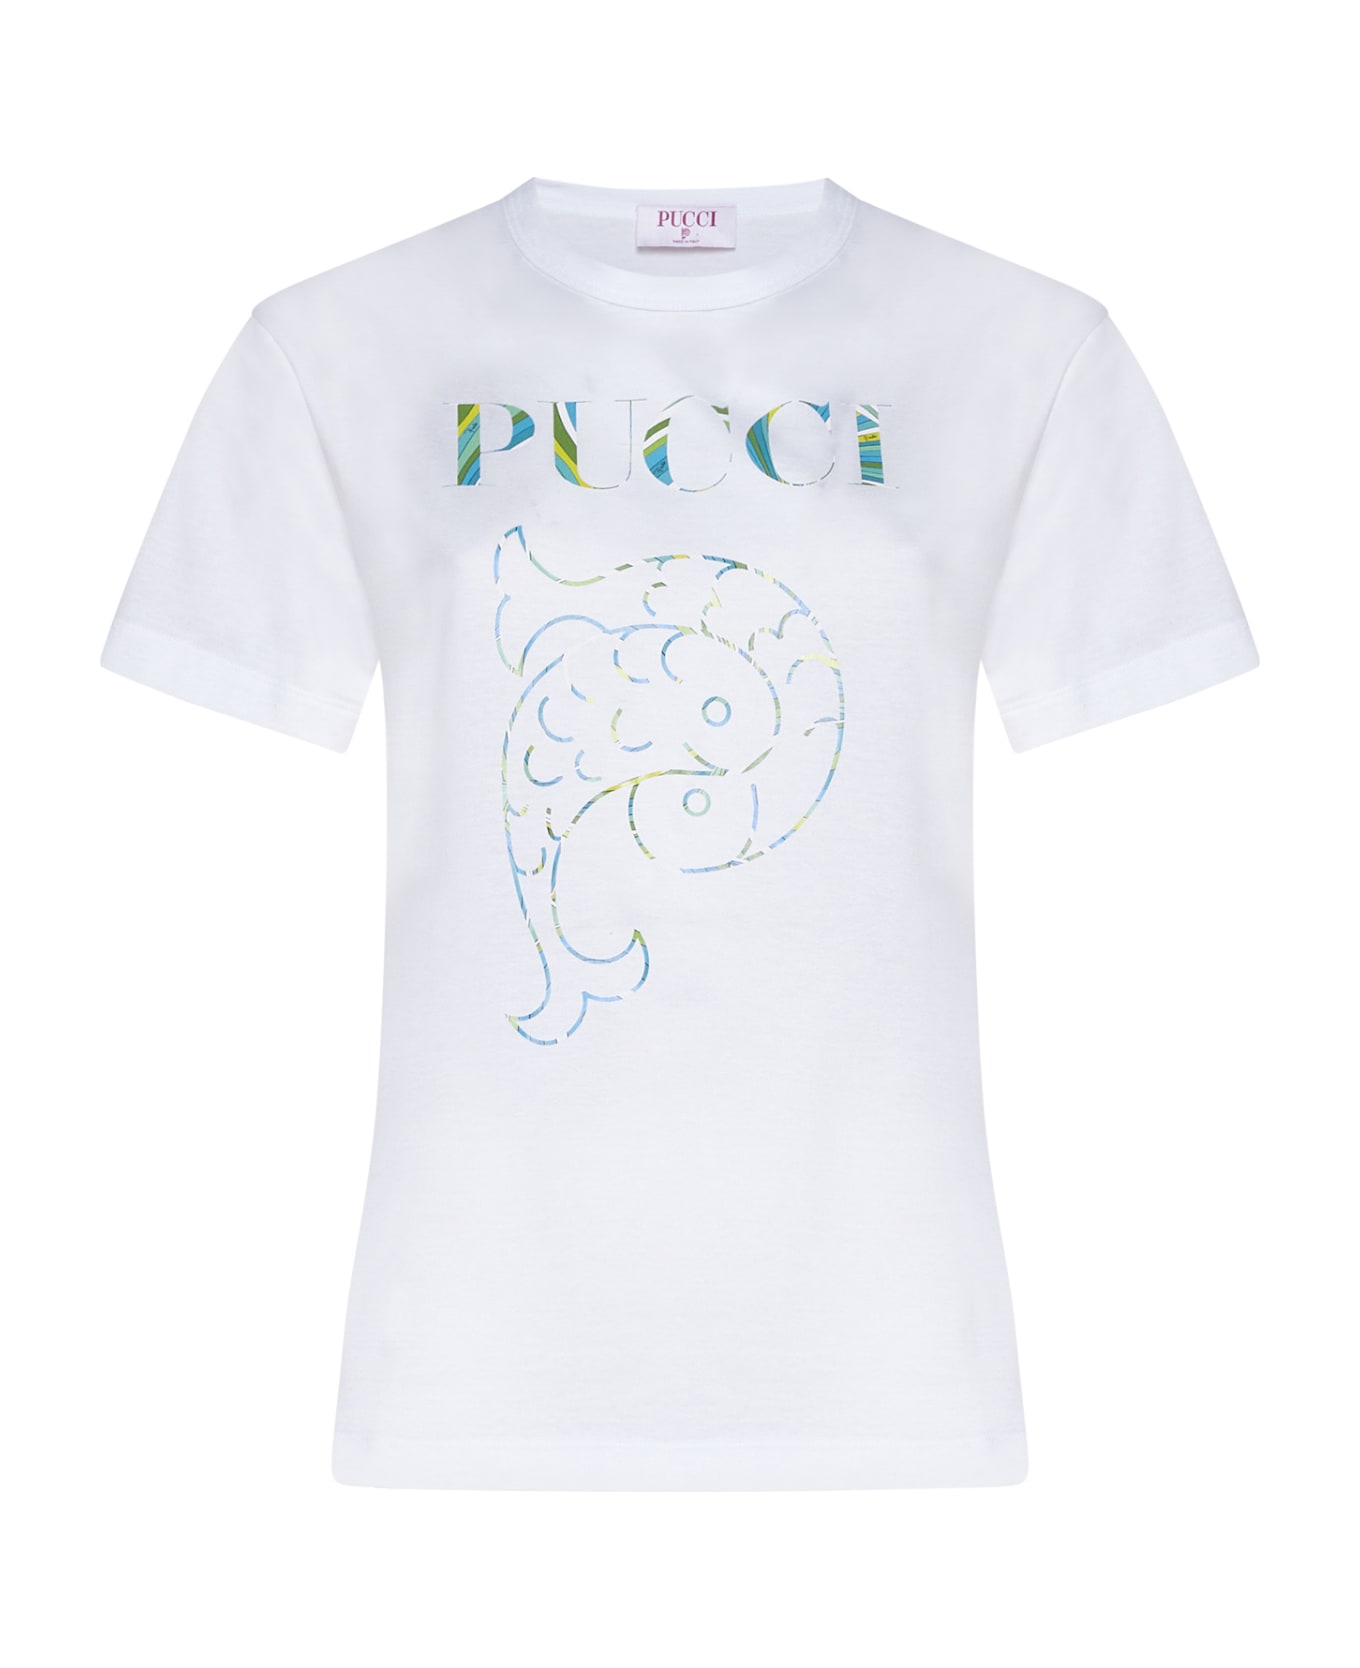 Pucci T-Shirt - White